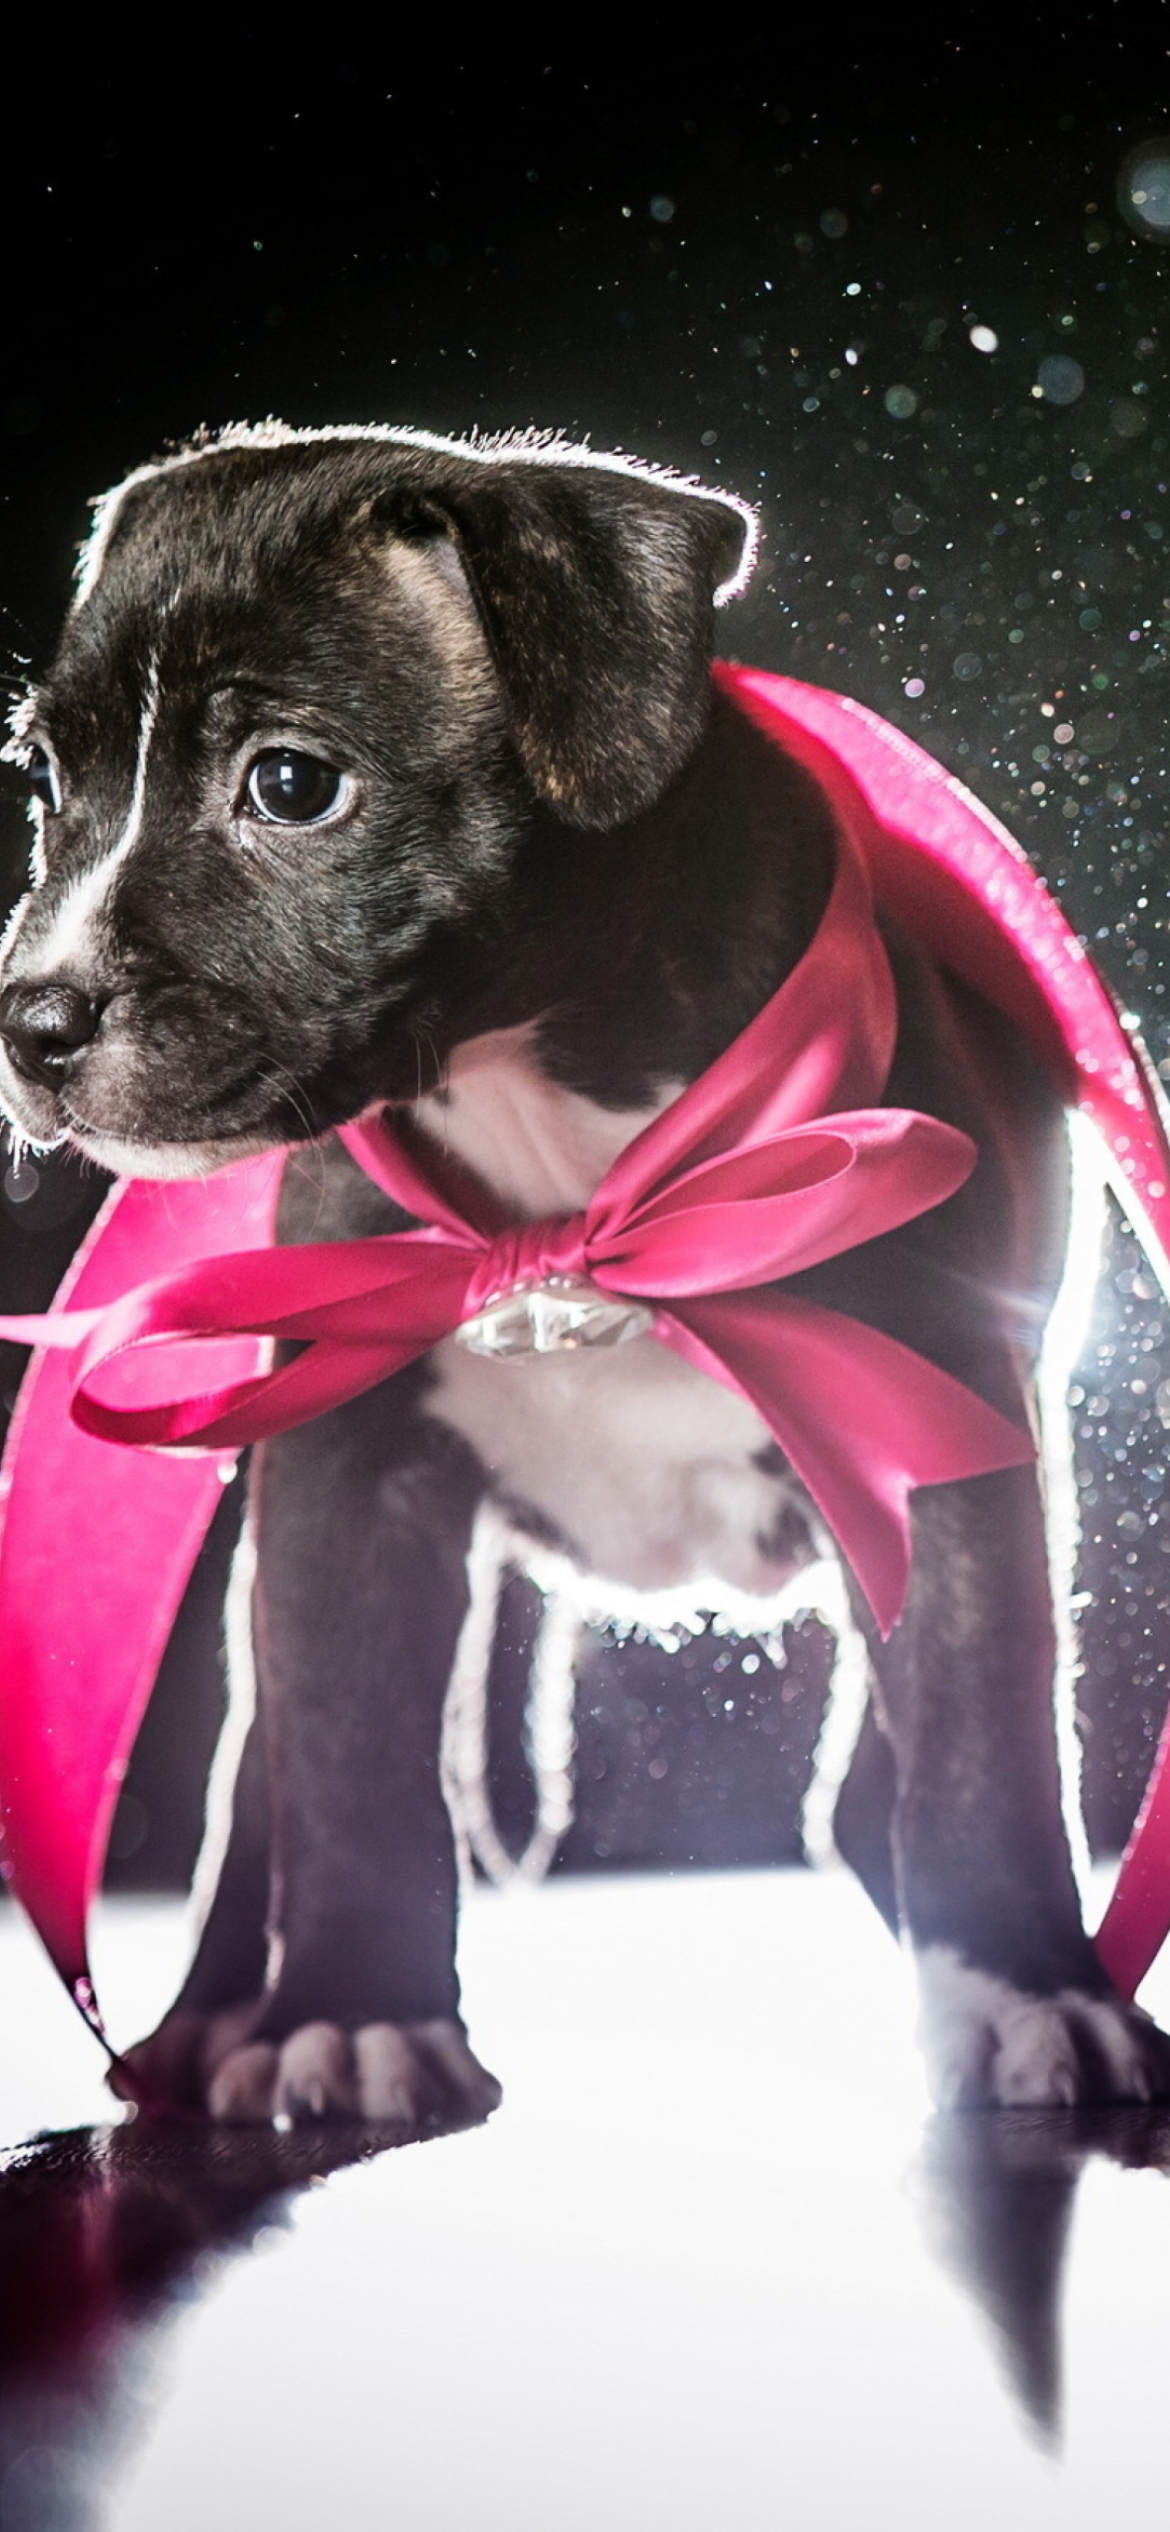 Sfondi Cute Puppy In Pink Cloak 1170x2532